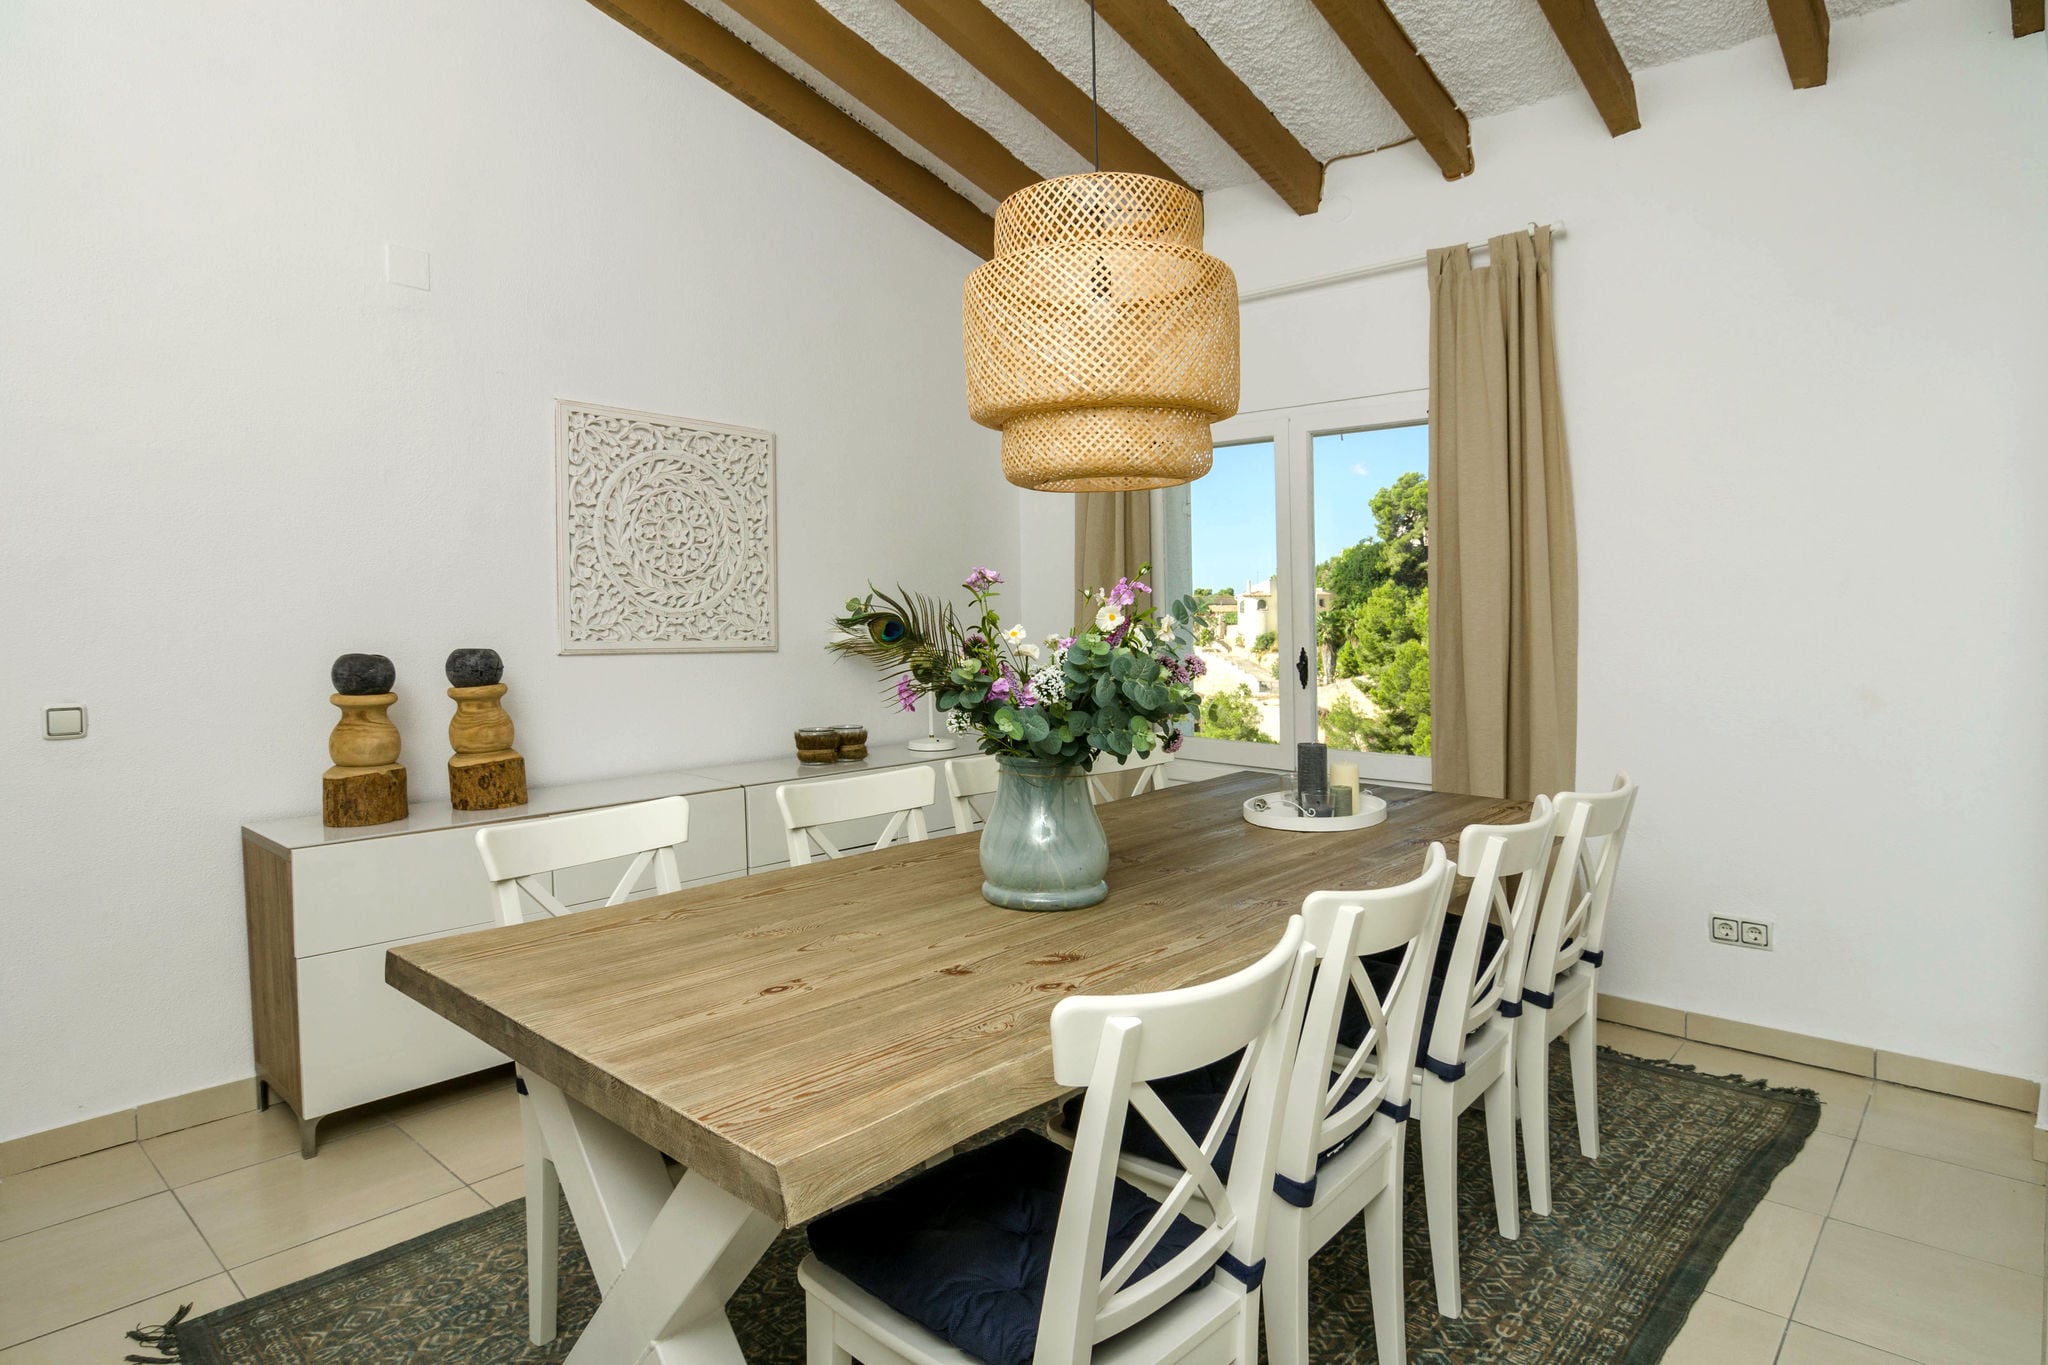 Villa de style Ibiza à Moraira avec piscine privée et vue magnifique